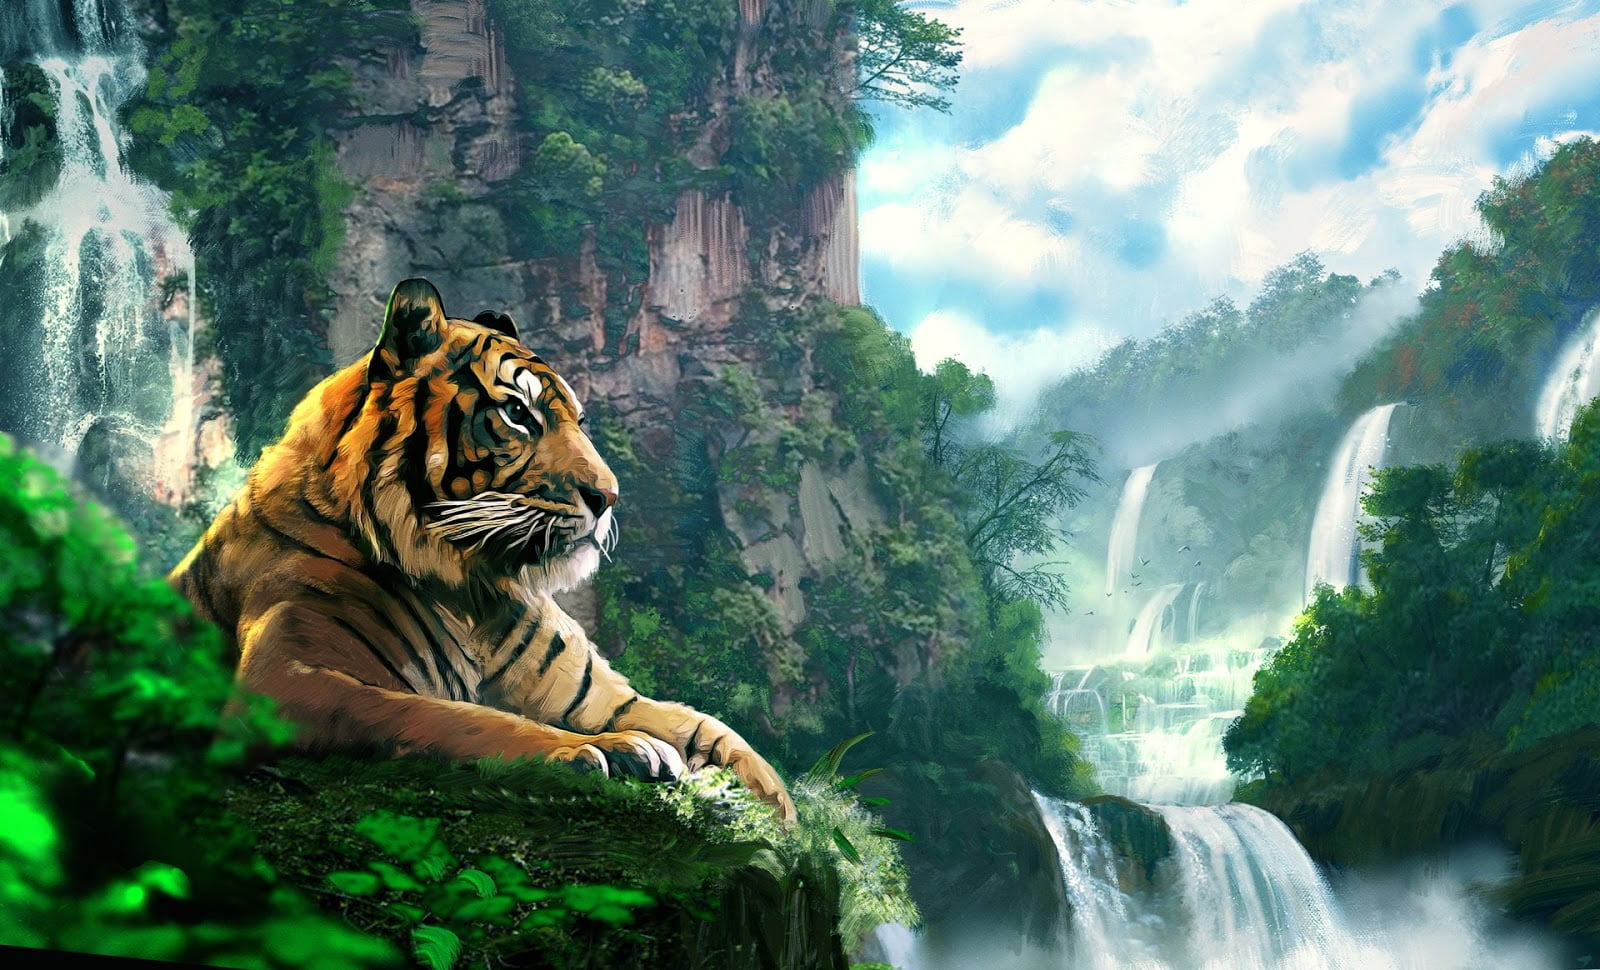 hình nền điện thoại đẹp con hổ  Tiger images Tiger wallpaper Animal  wallpaper